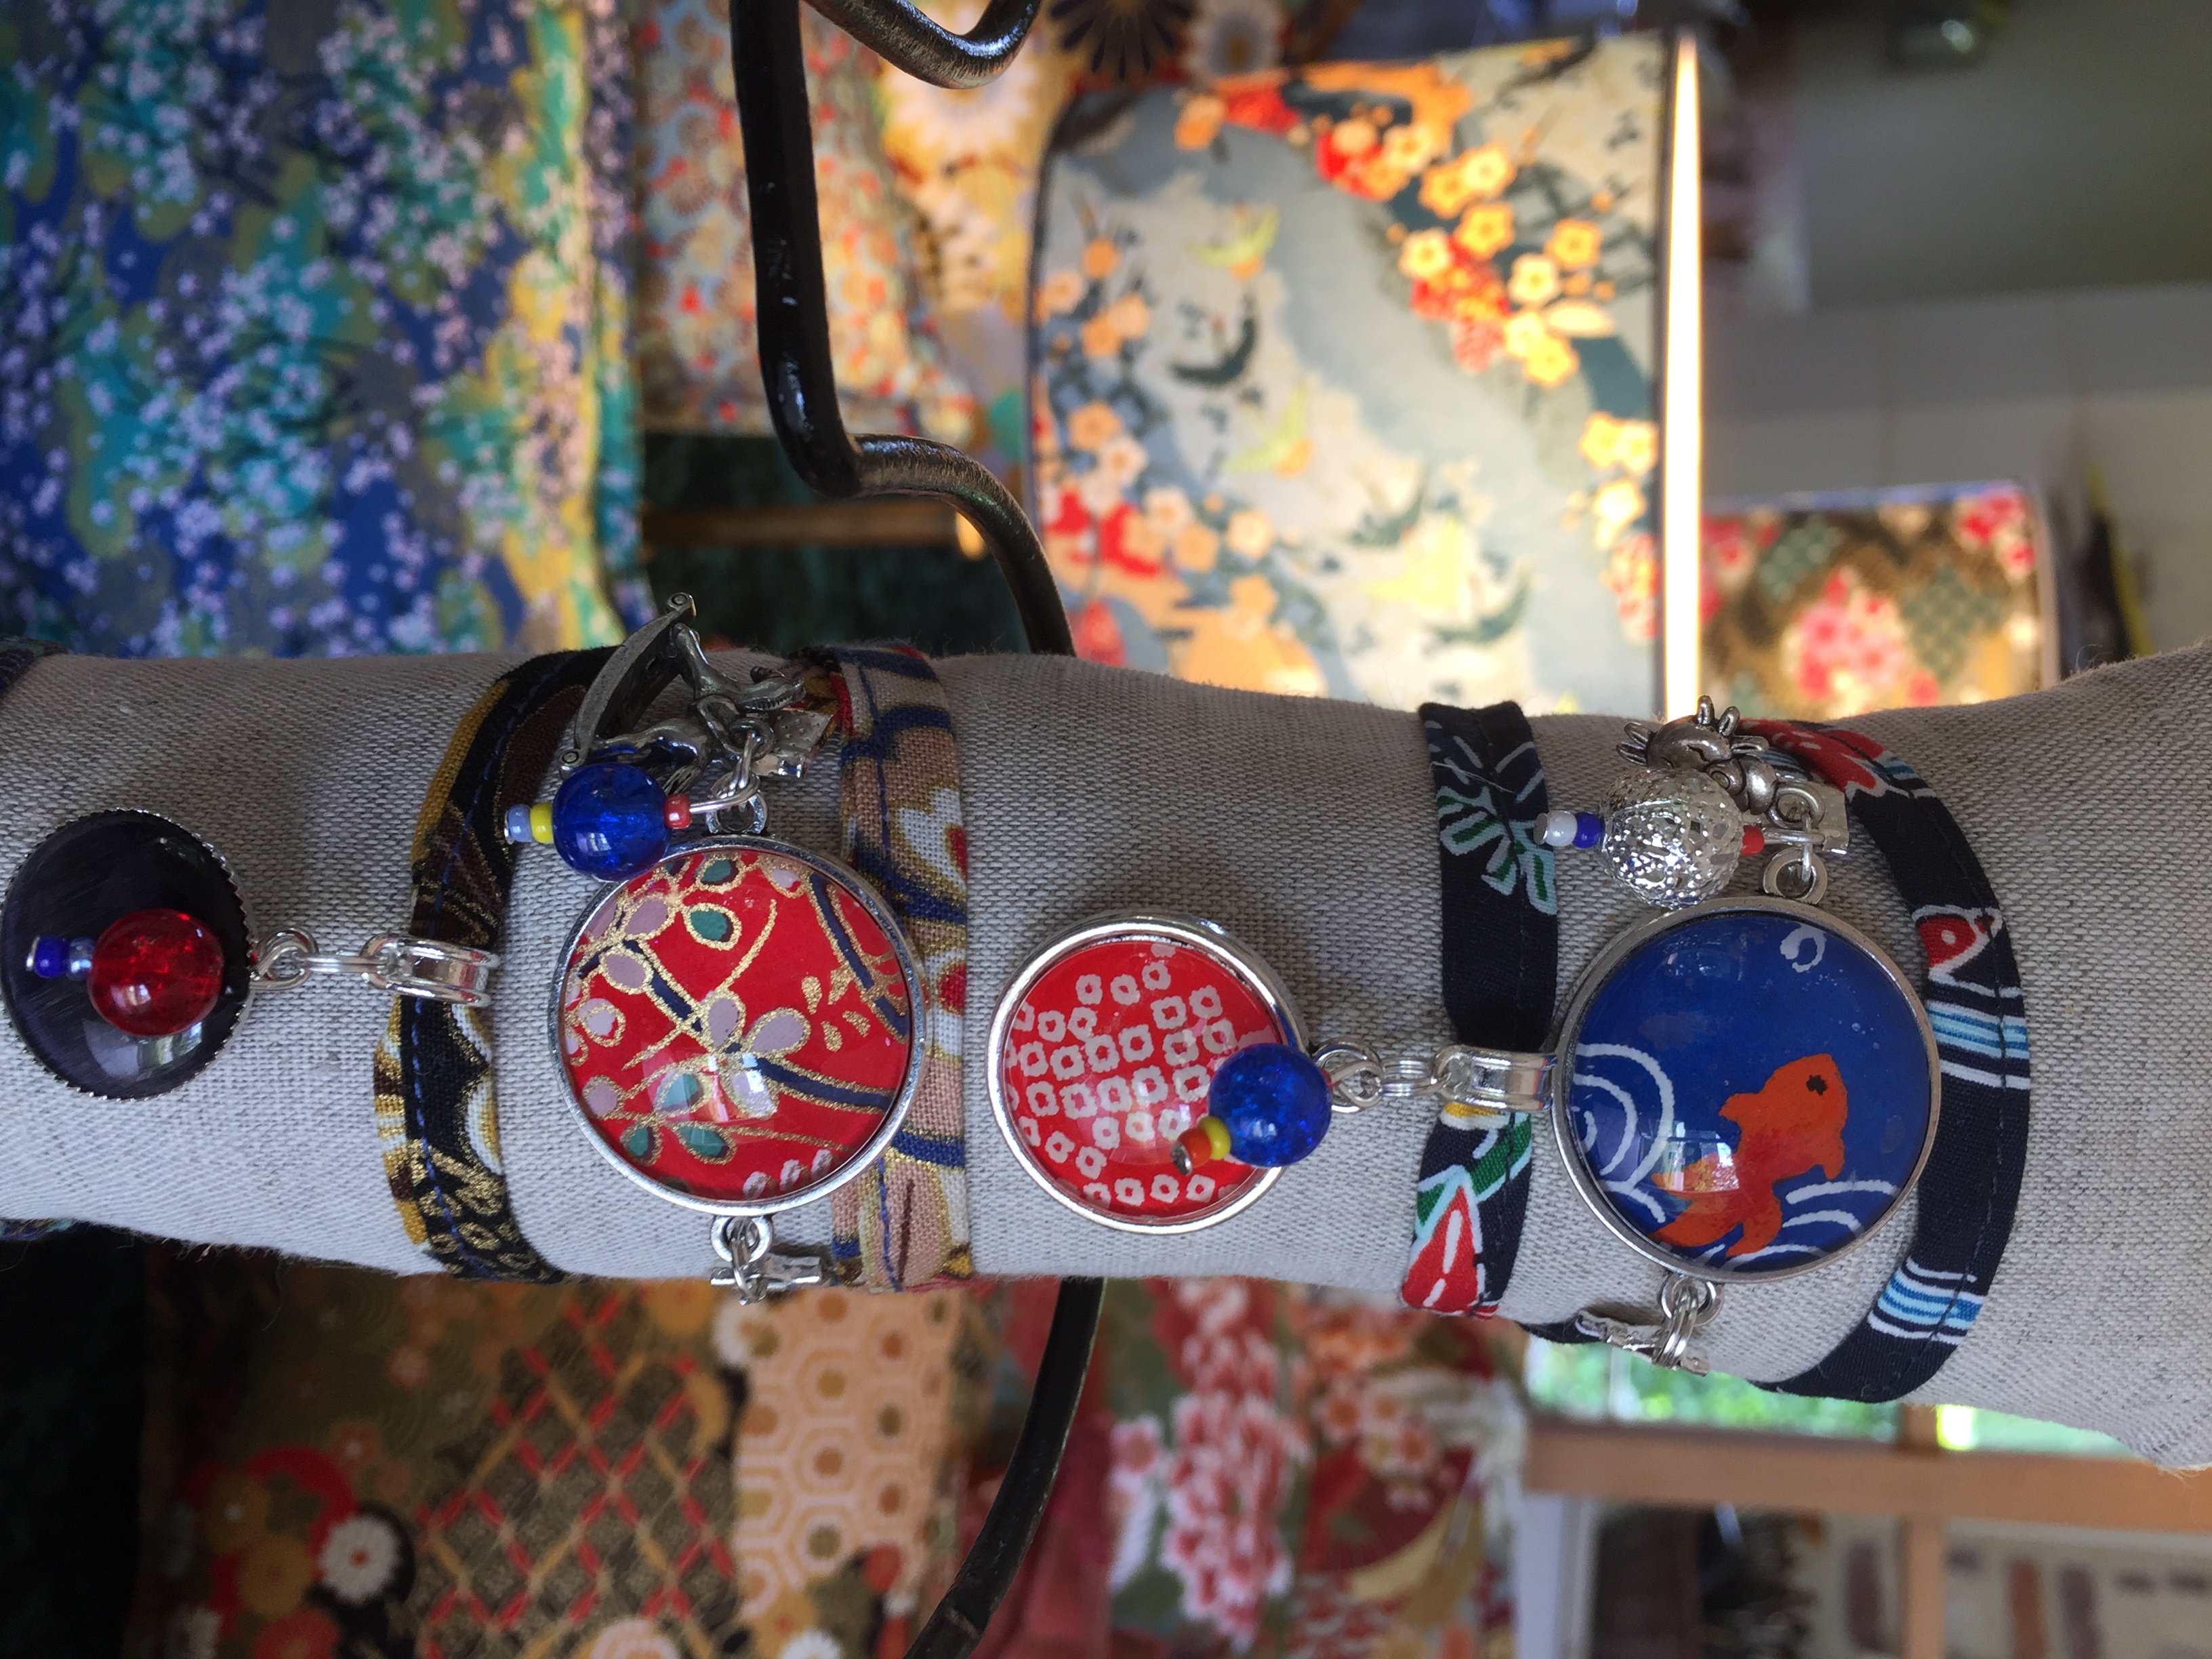 L'Atelier de l'Abat-Jour, bracelet japoni, Amboise